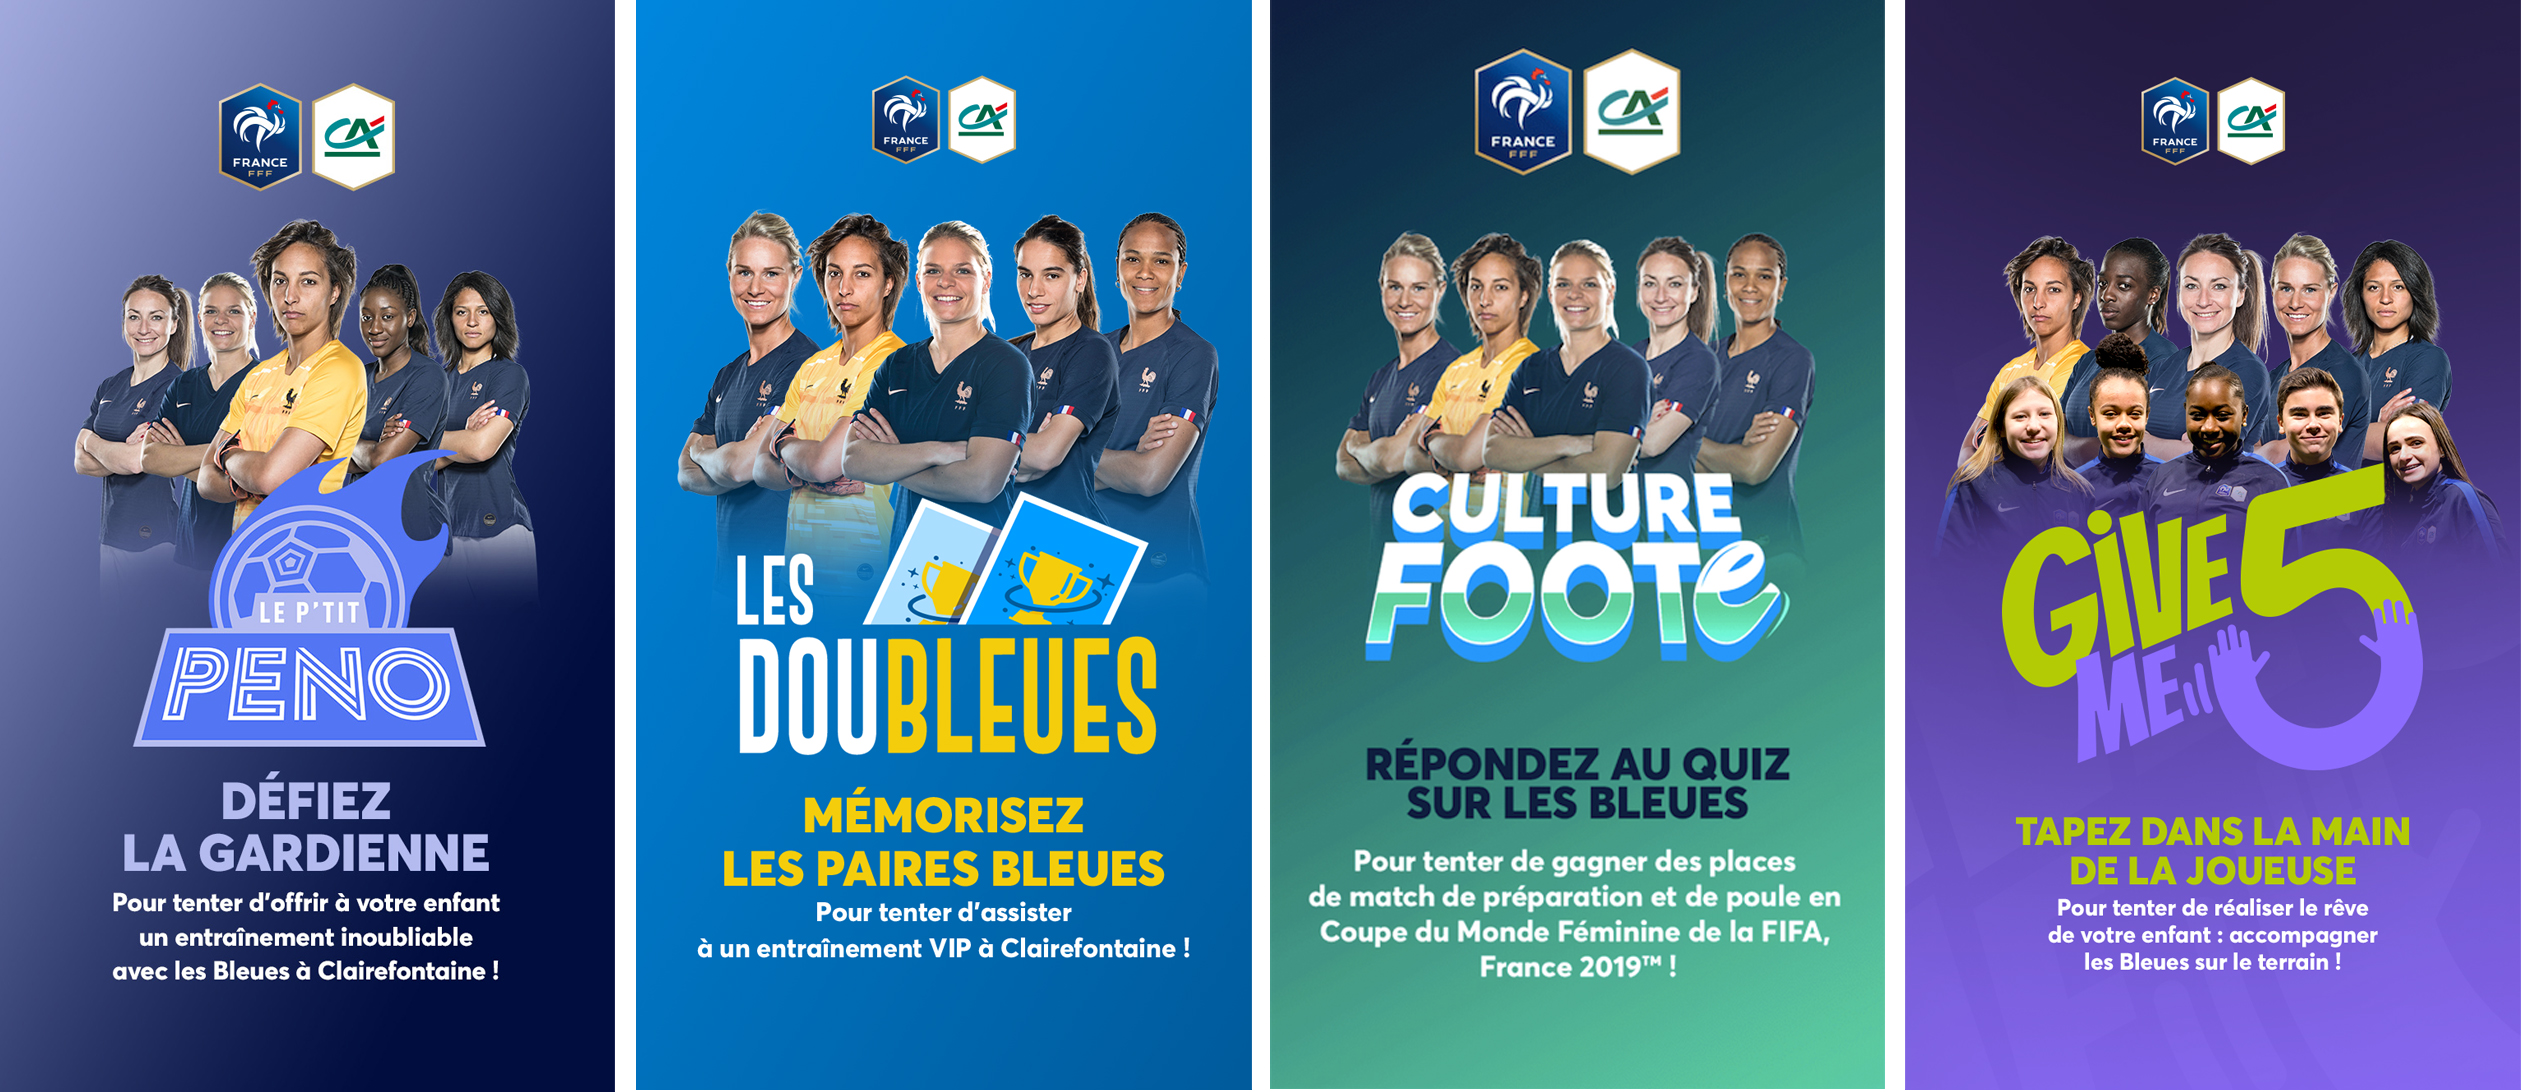 Actualite_news_jeu_credit_agricole_plus_prets_des_bleues_coupe_monde_fifa_france_2019_world_cup